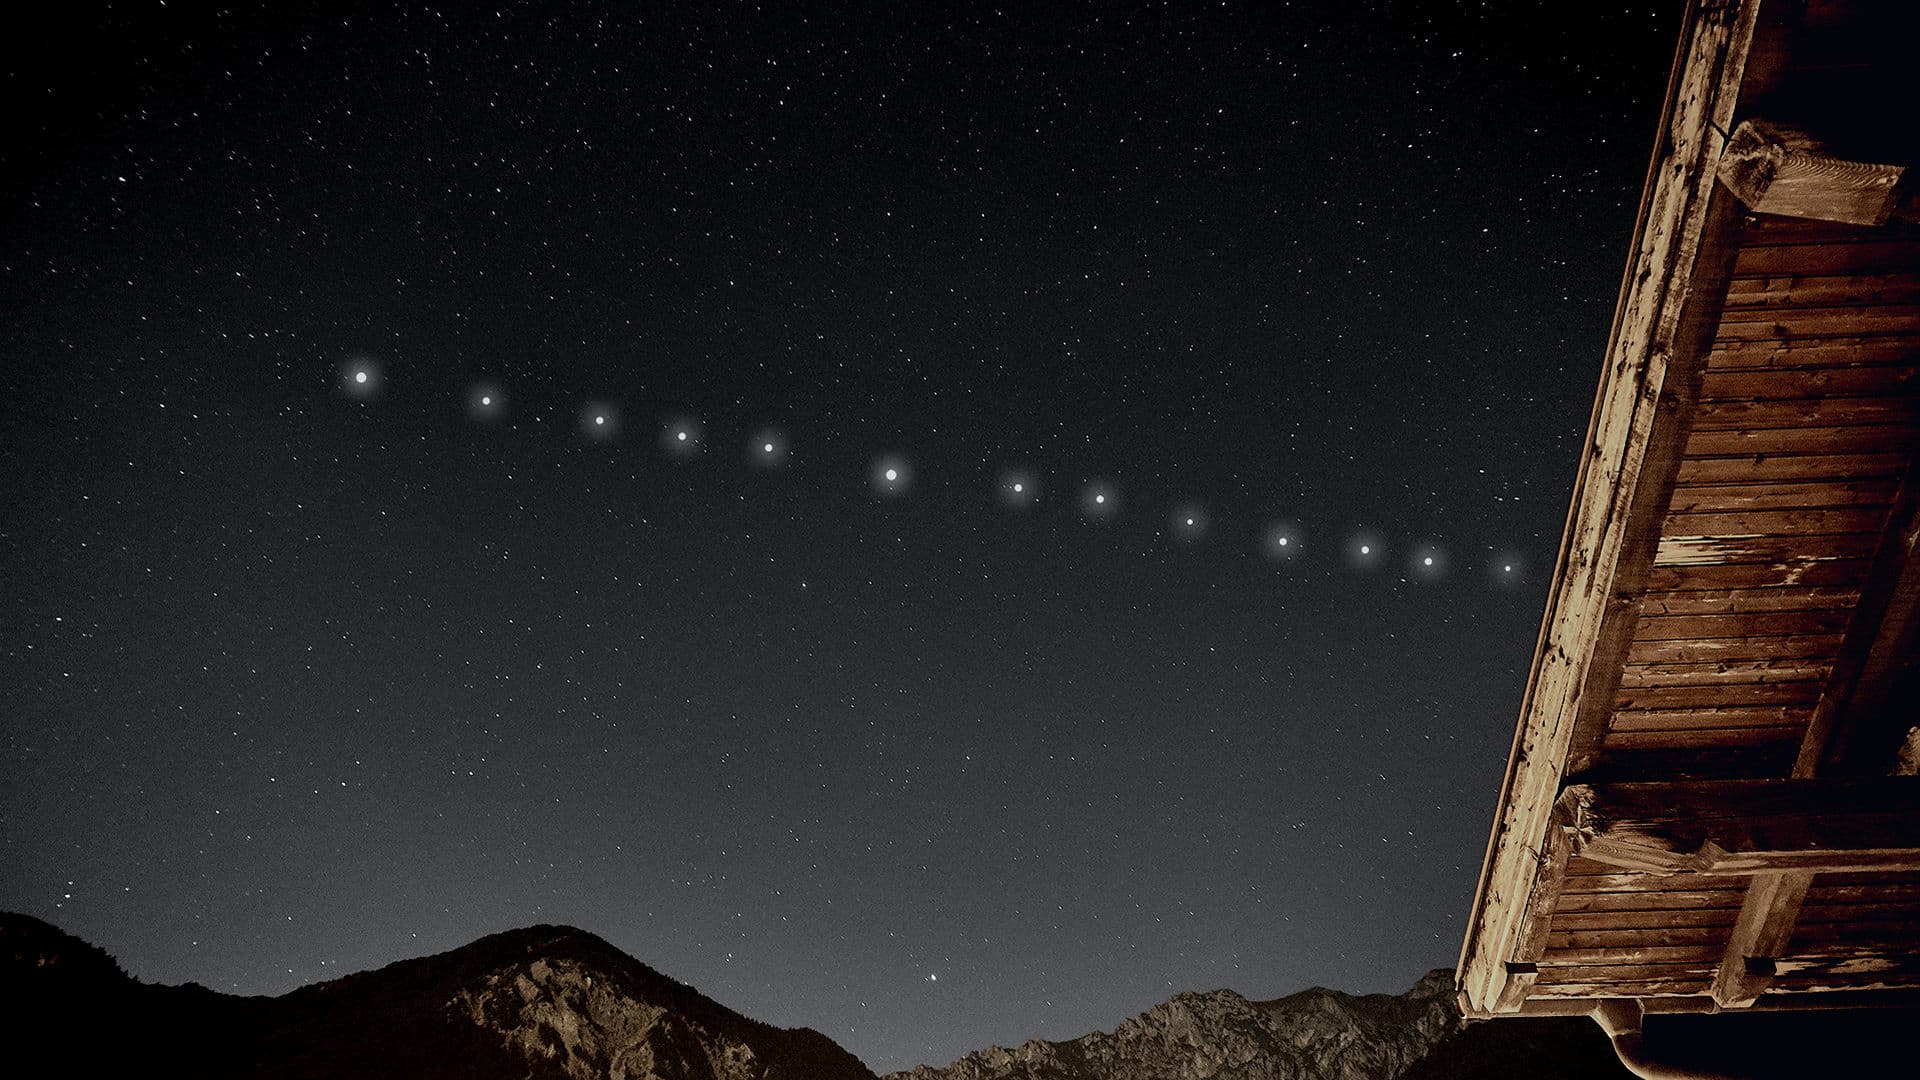 Cómo ver satélites Starlink de SpaceX en el cielo | Star Walk